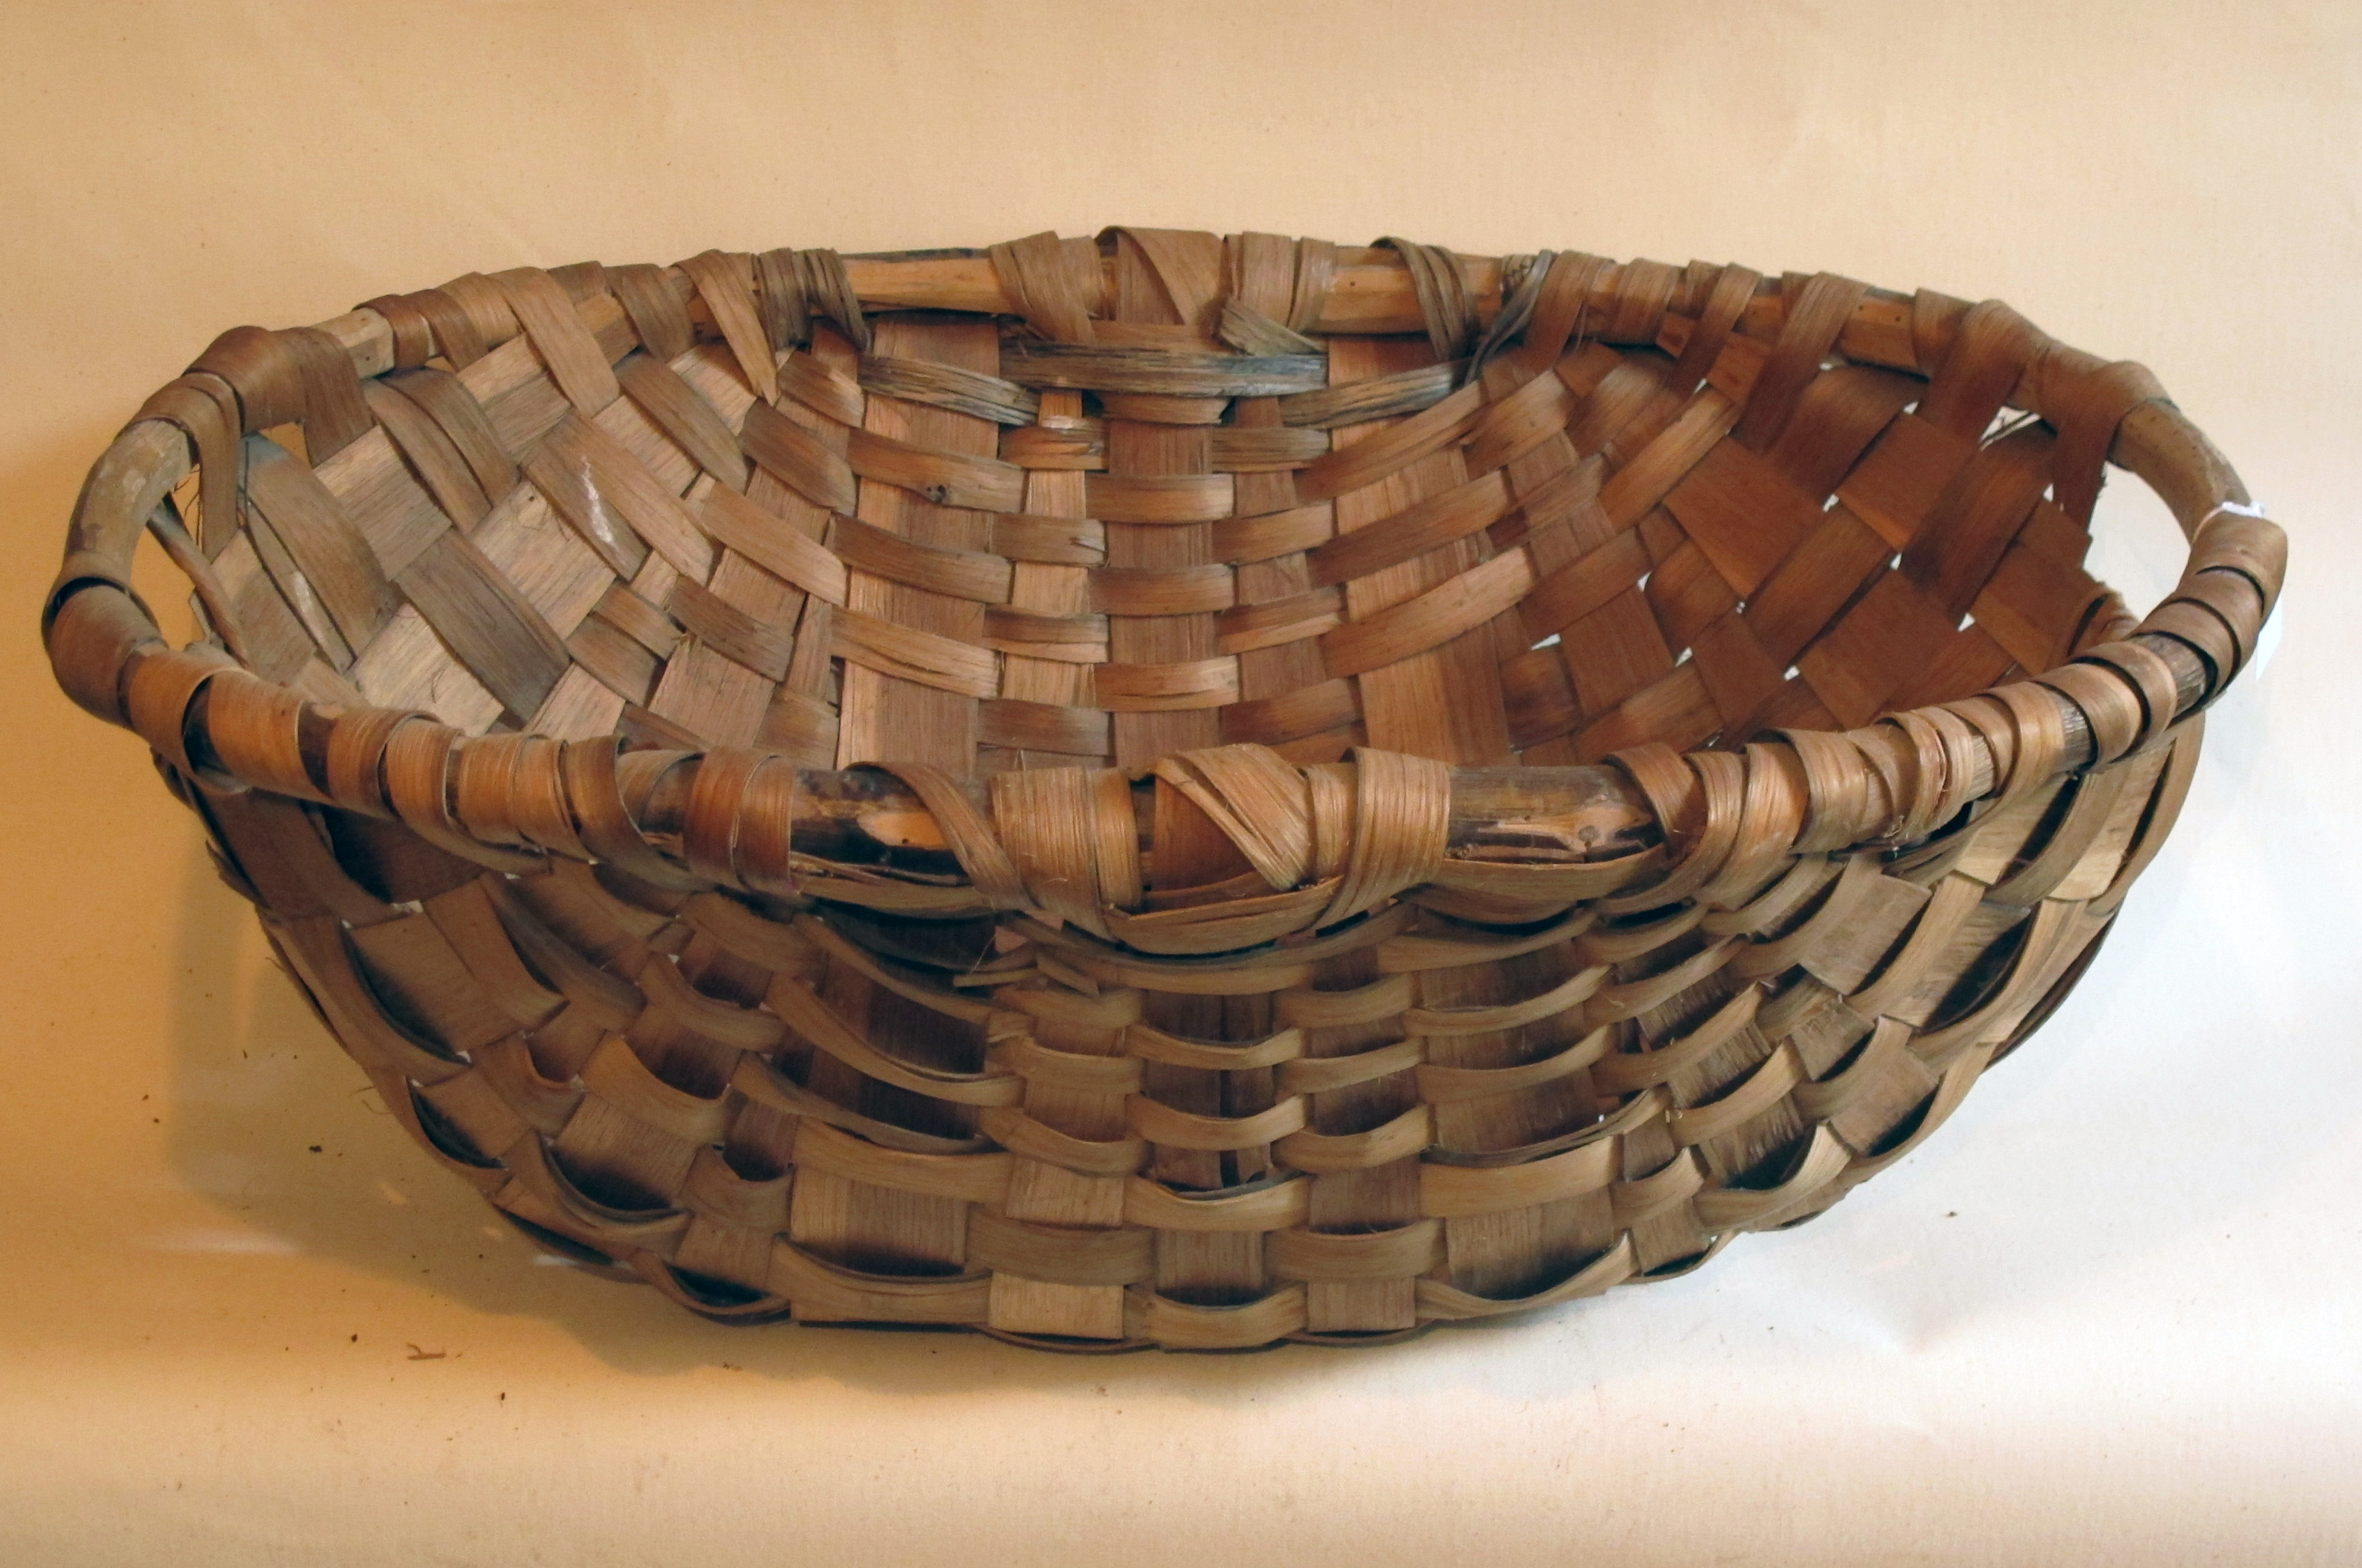 Woven split wood basketry | Woven Communities